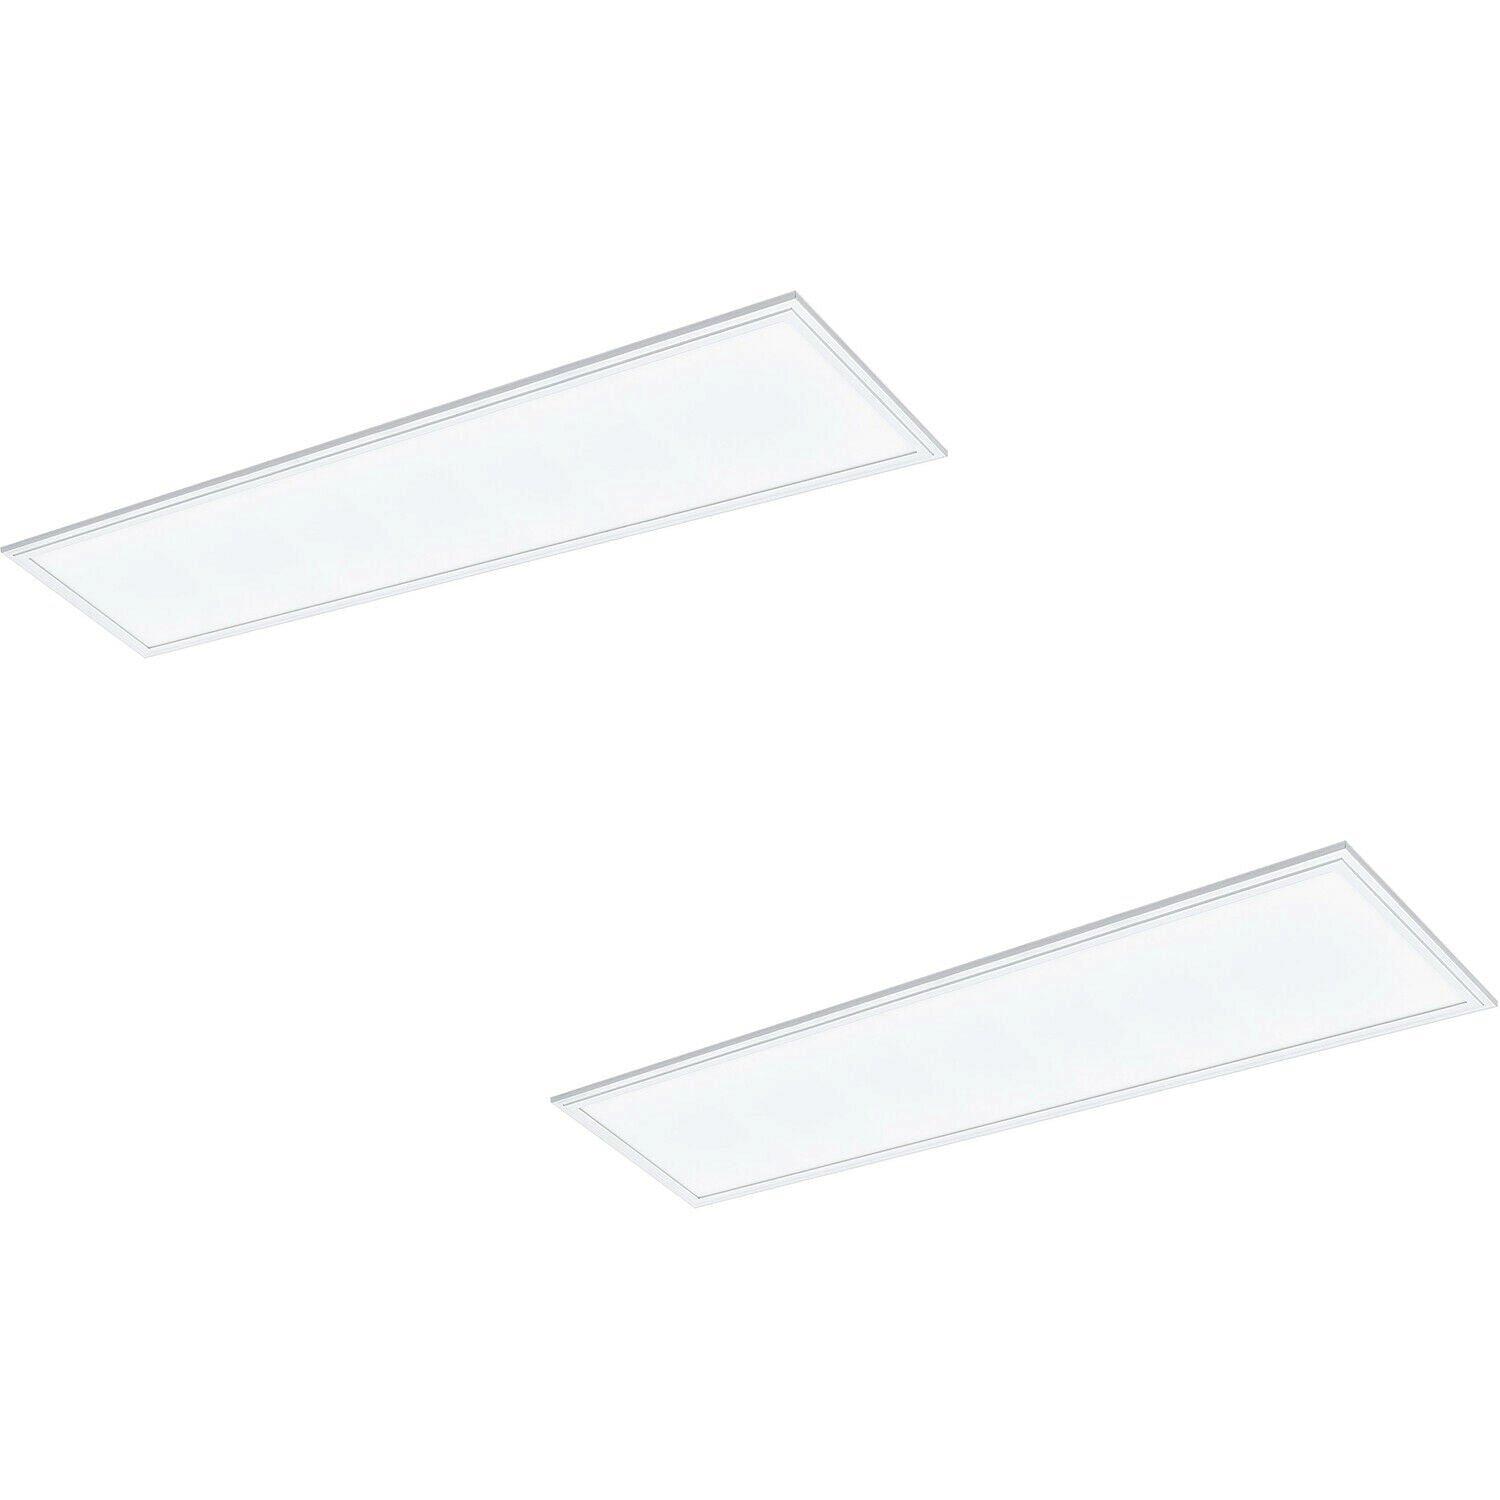 2 PACK Flush Ceiling Panel Light White Rectangle Tile 40W Built in LED 4000K